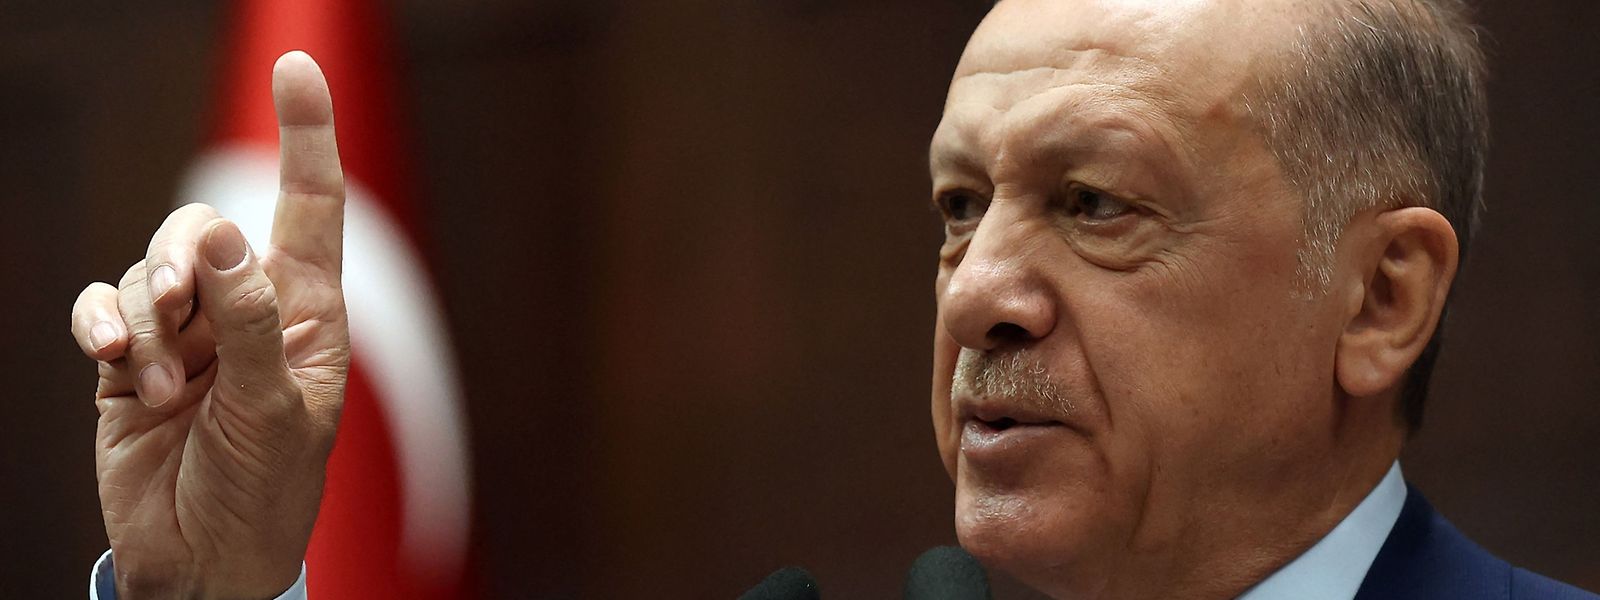 O presidente turco Erdogan também acusou outros países e membros da NATO - incluindo Noruega, Alemanha, França, Países Baixos, Reino Unido e Itália - de apoiar grupos terroristas curdos contrários à Turquia.